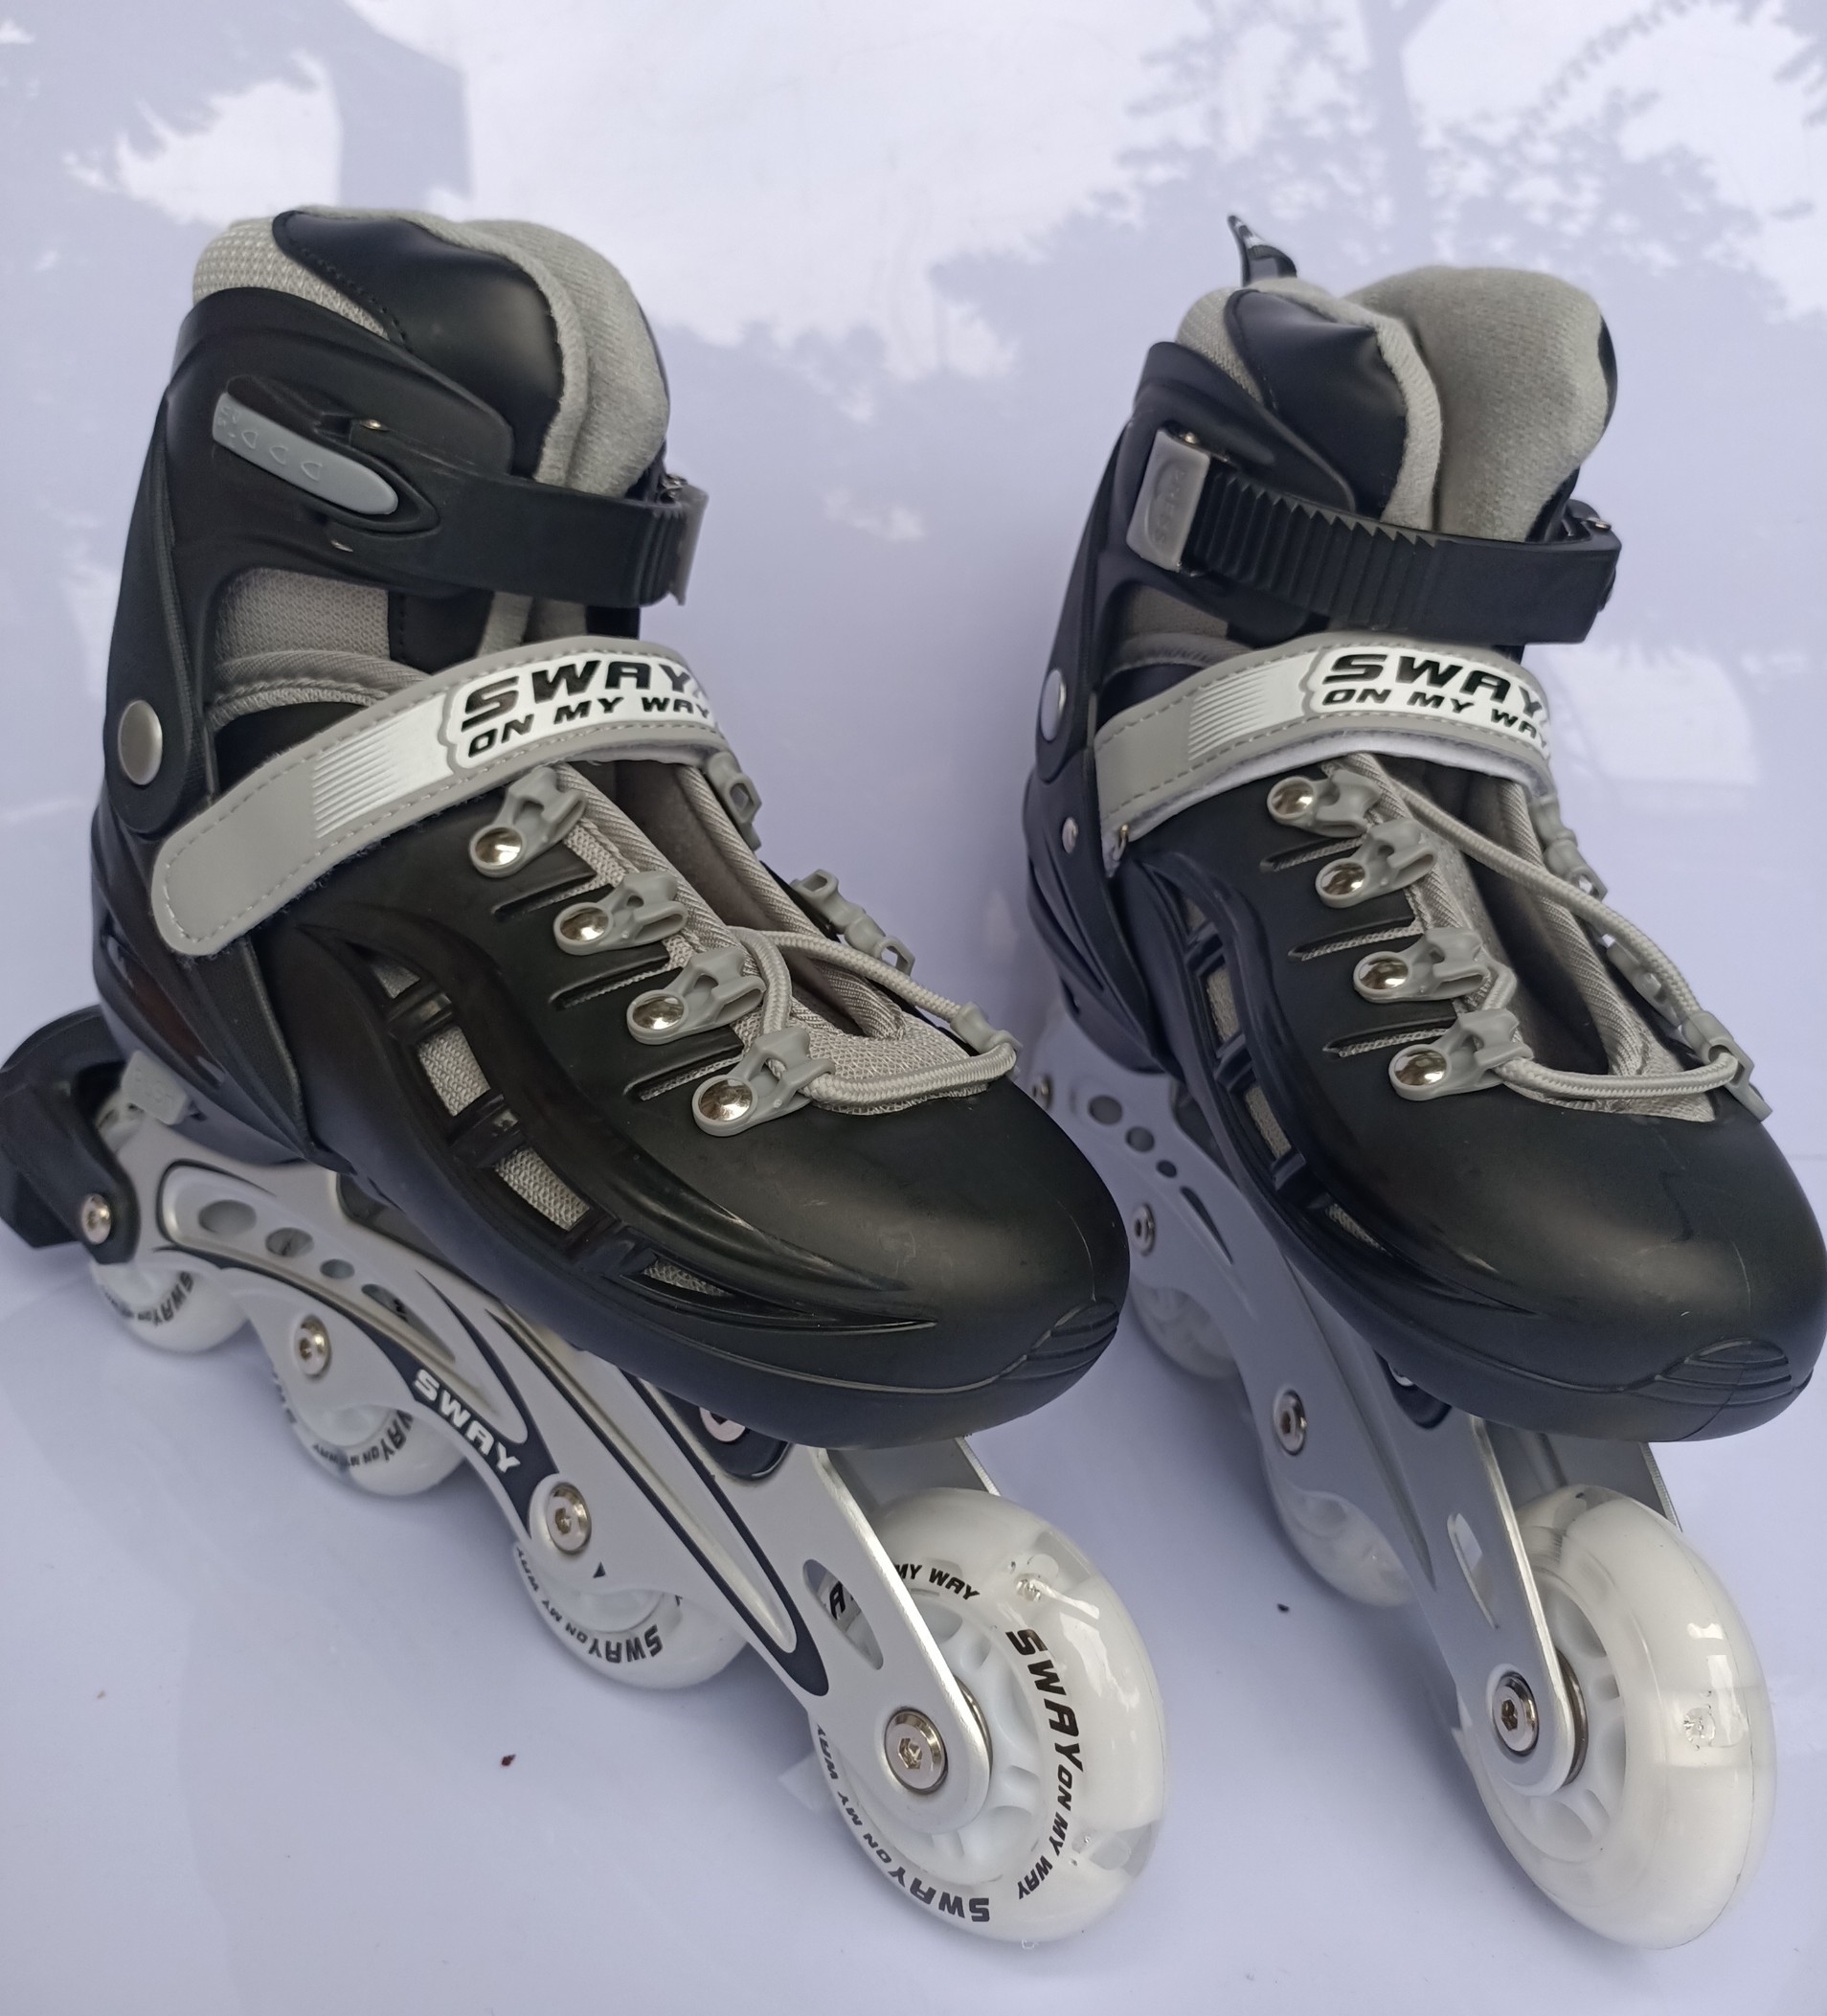 Giày trượt patin trẻ em cao cấp SWAY bánh cao su sáng led tặng kèm bảo hộ chân tay